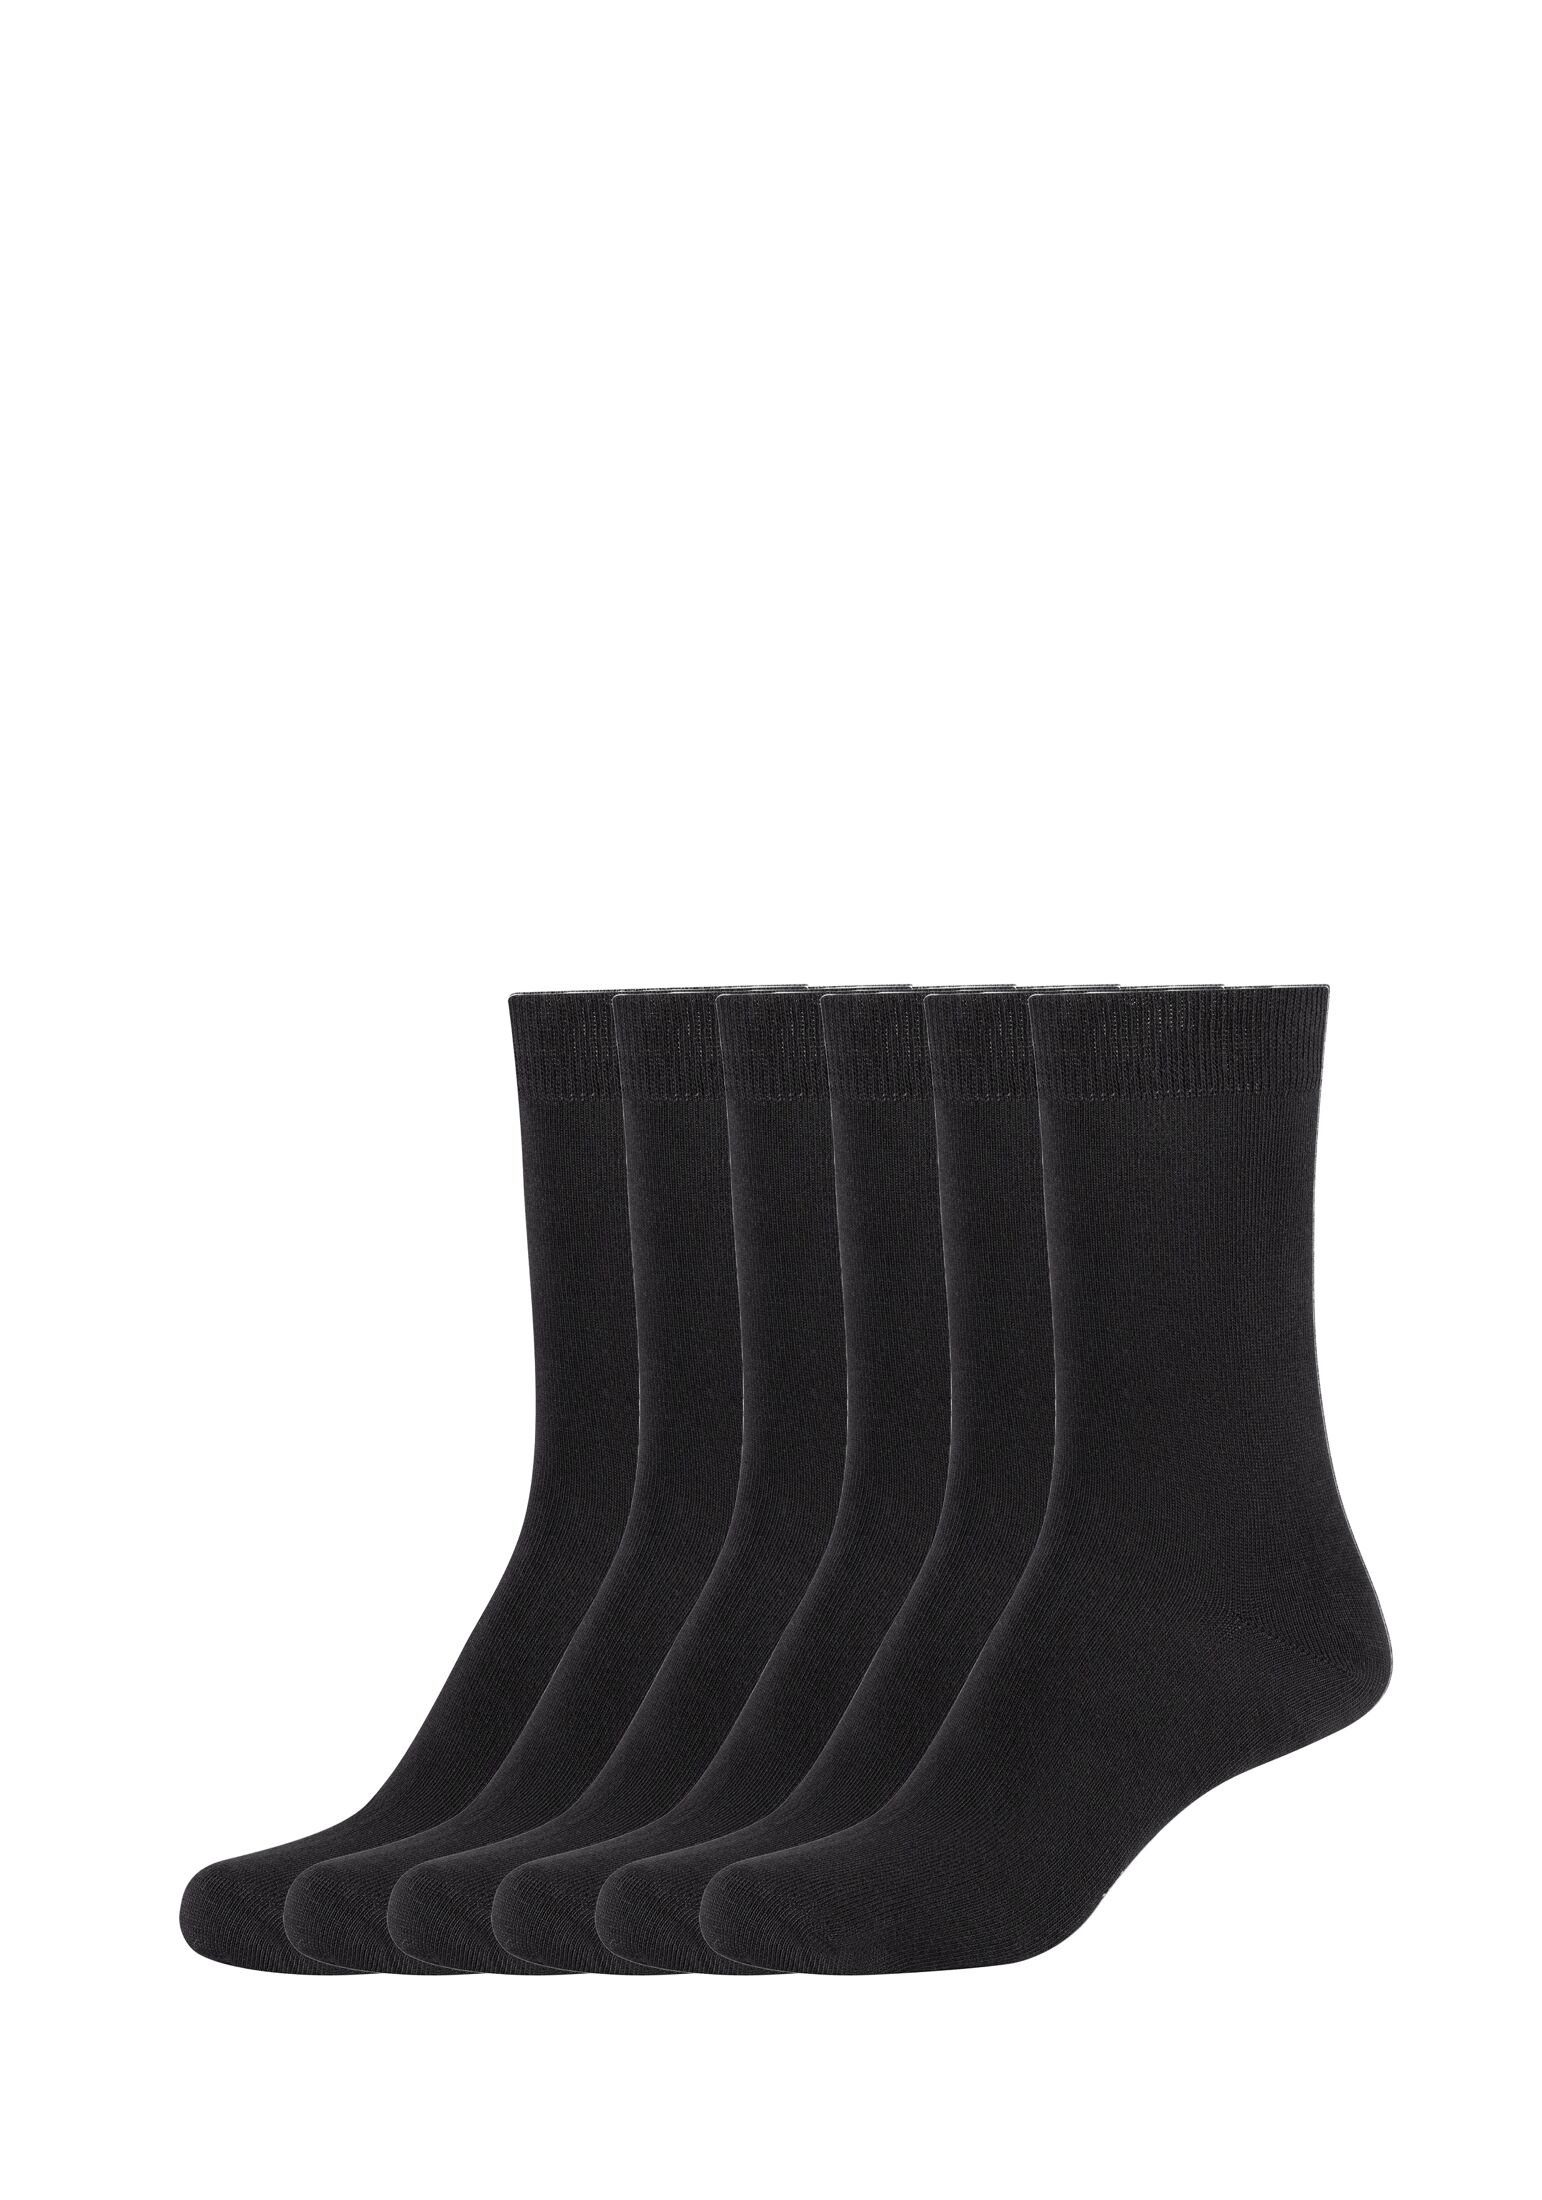 Socken black 6er s.Oliver Socken Pack